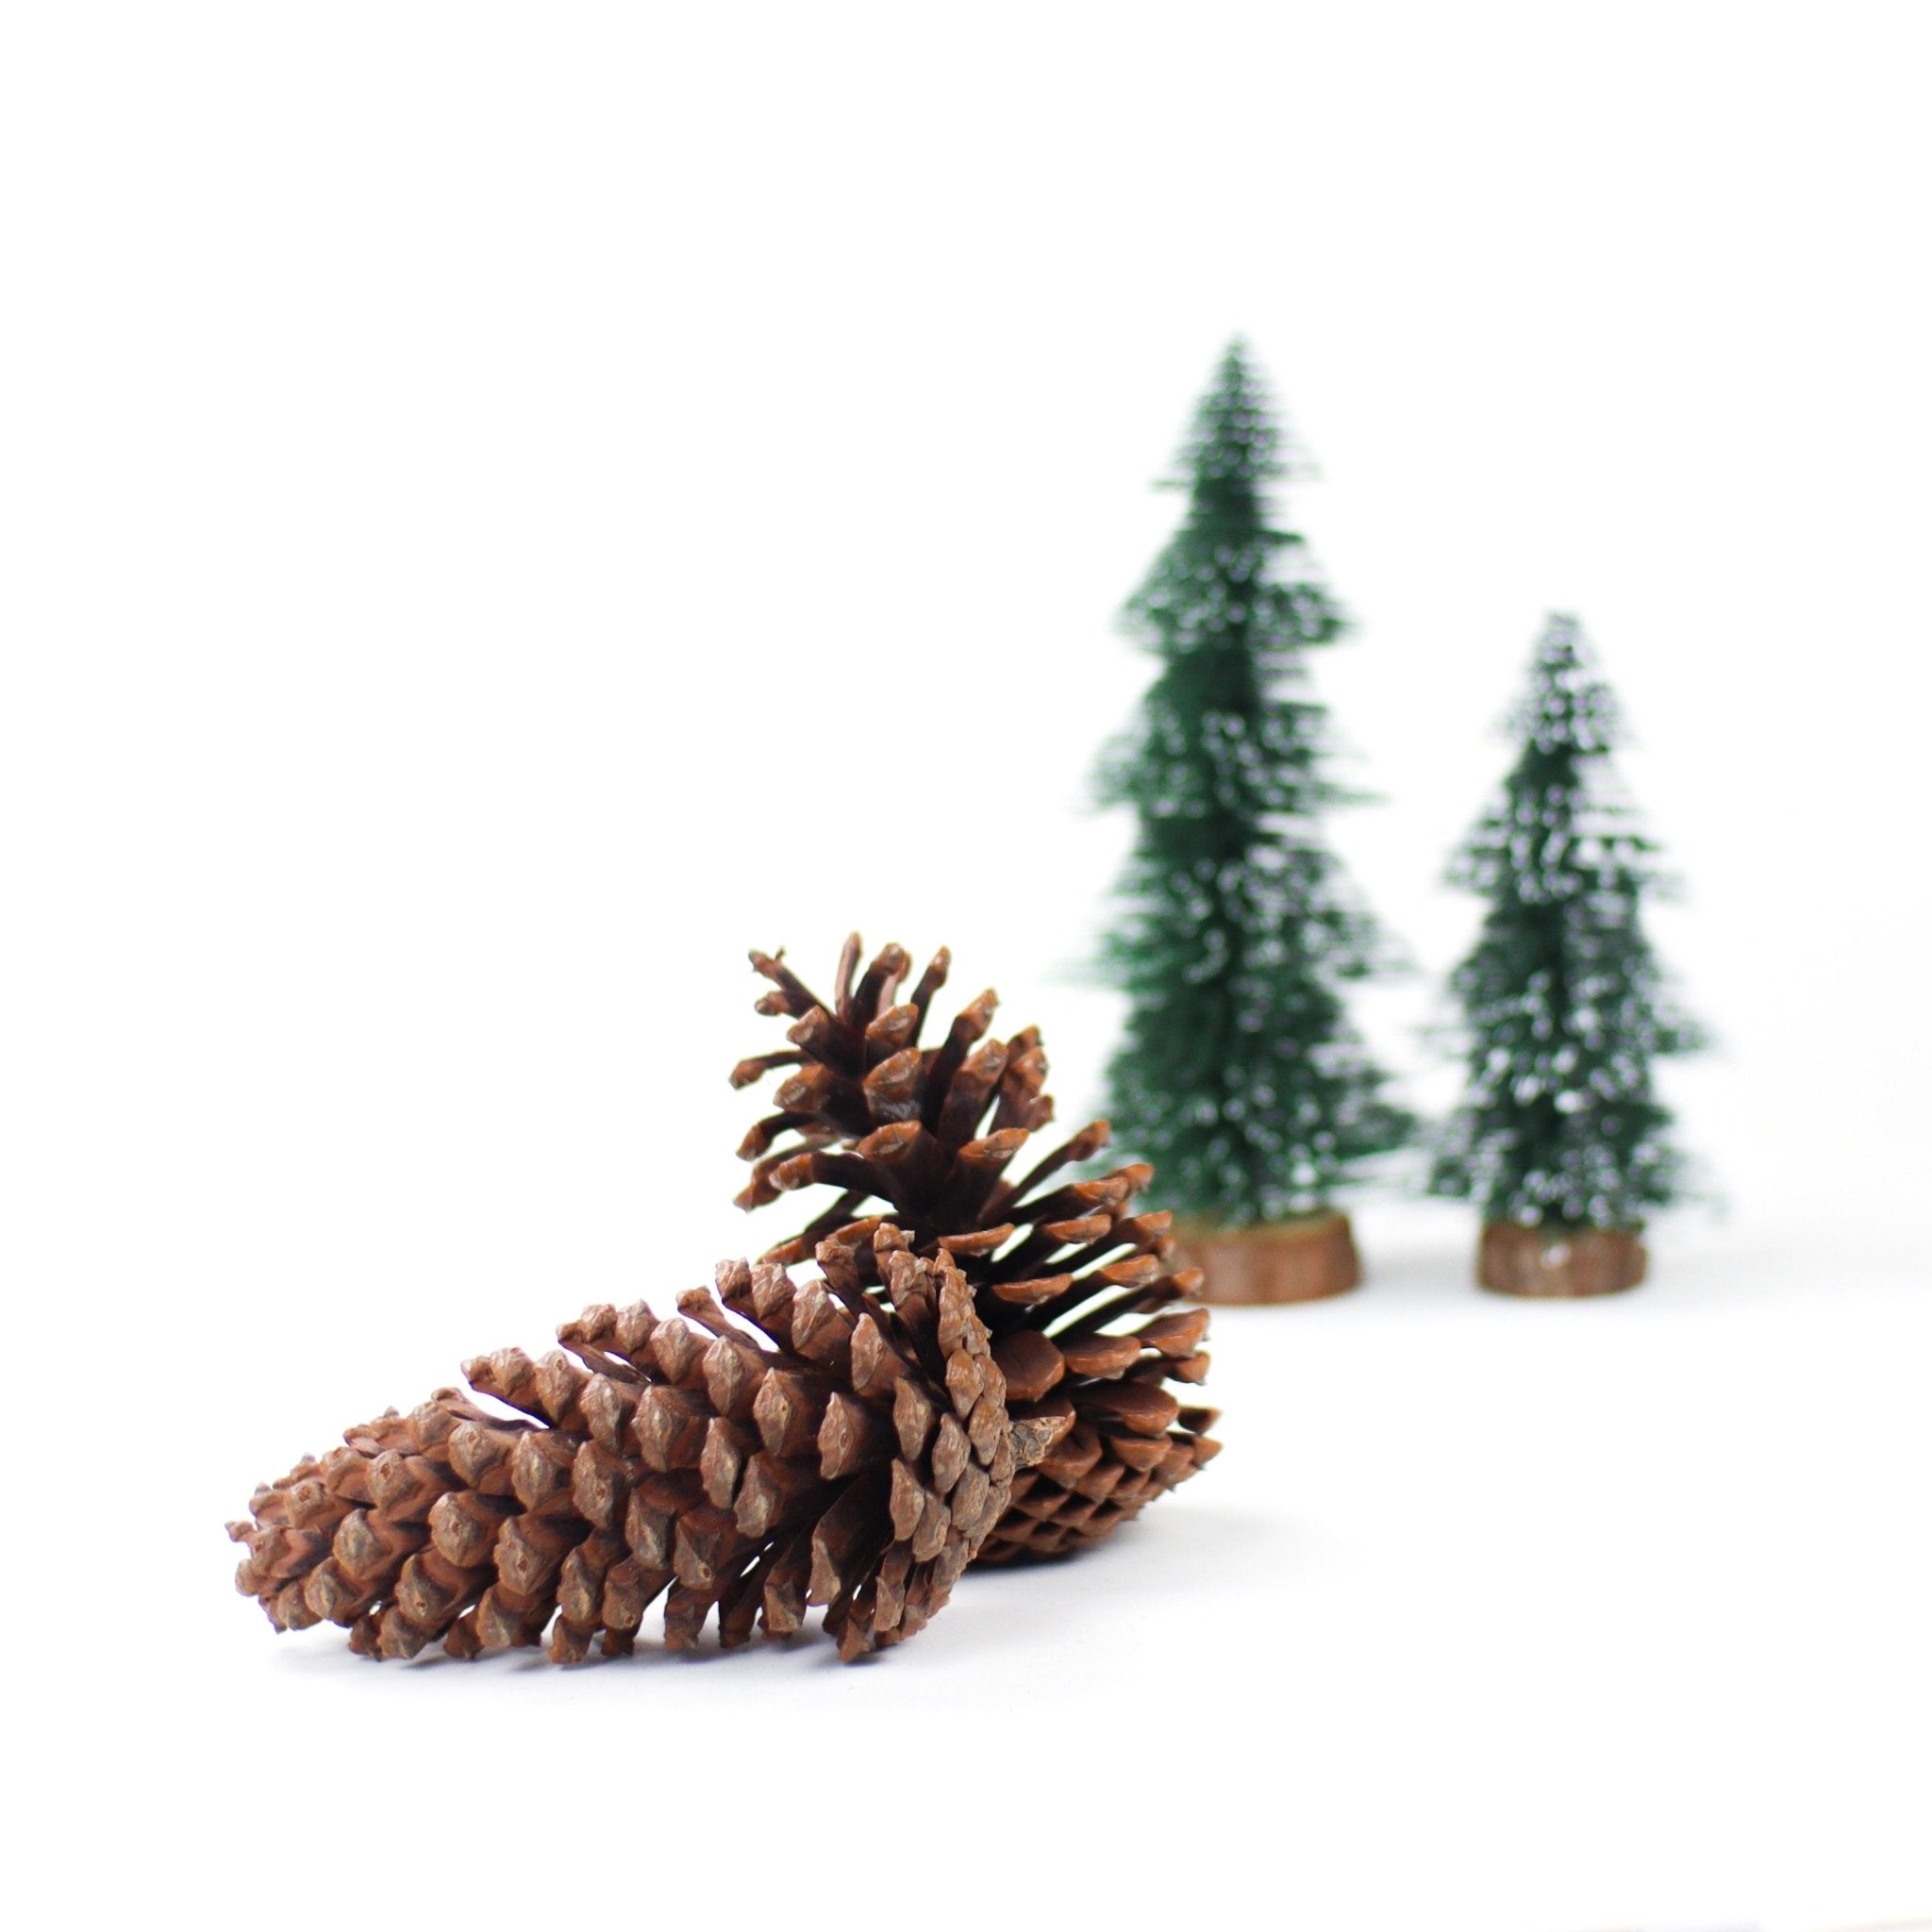 Pine Cones XL 2pcs - MODA FLORA Santa's Workshop